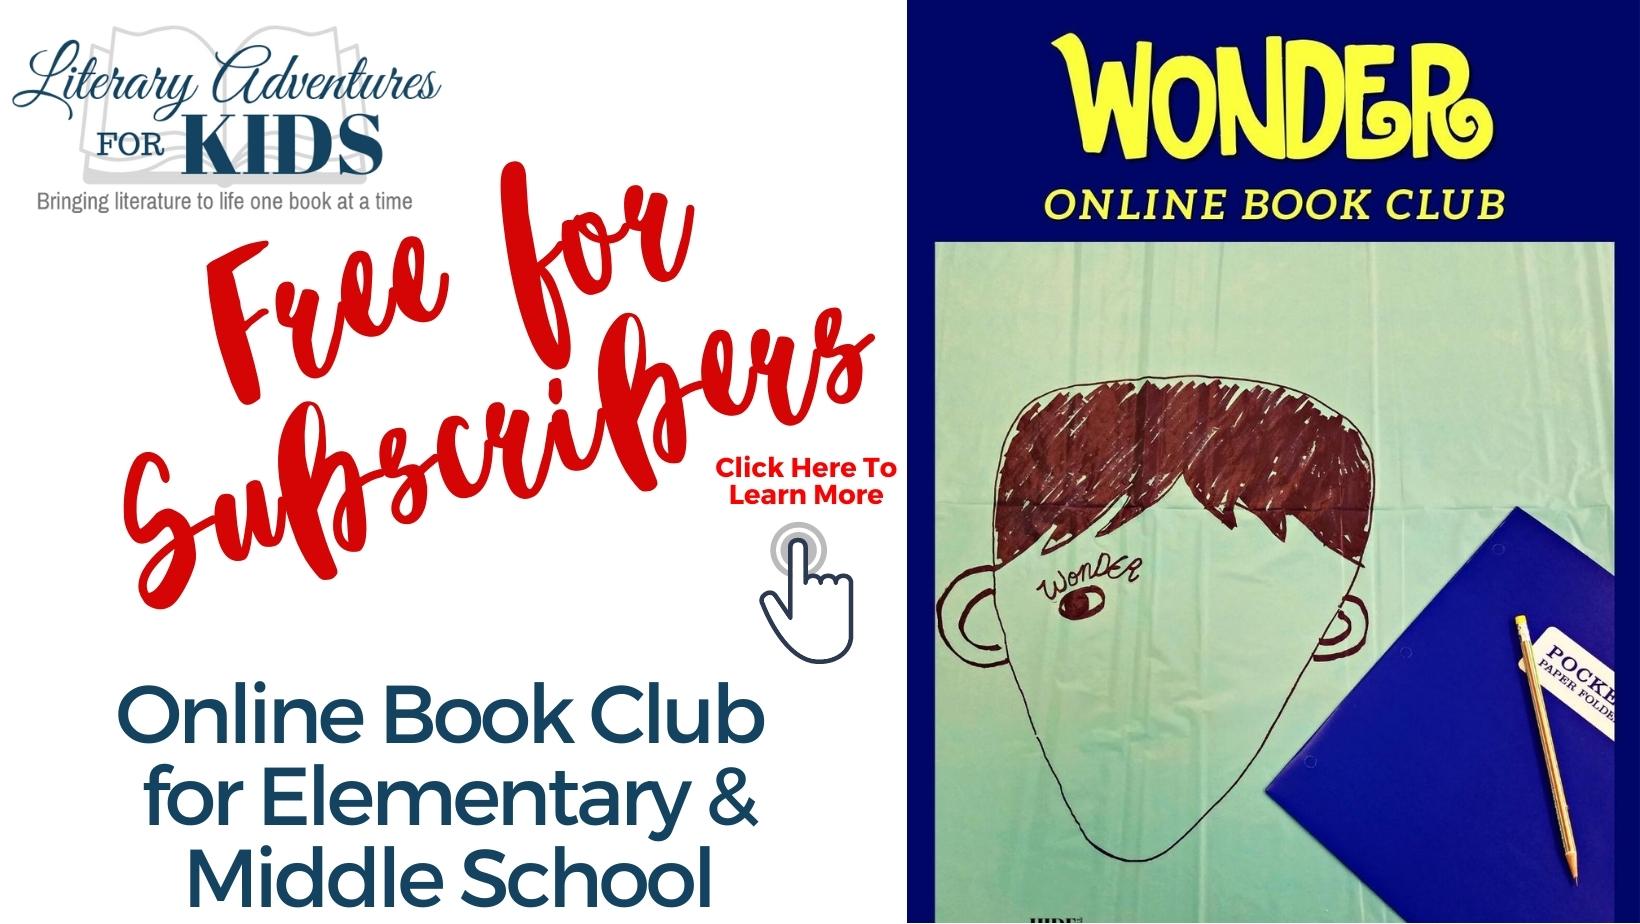 Wonder Online Book Club